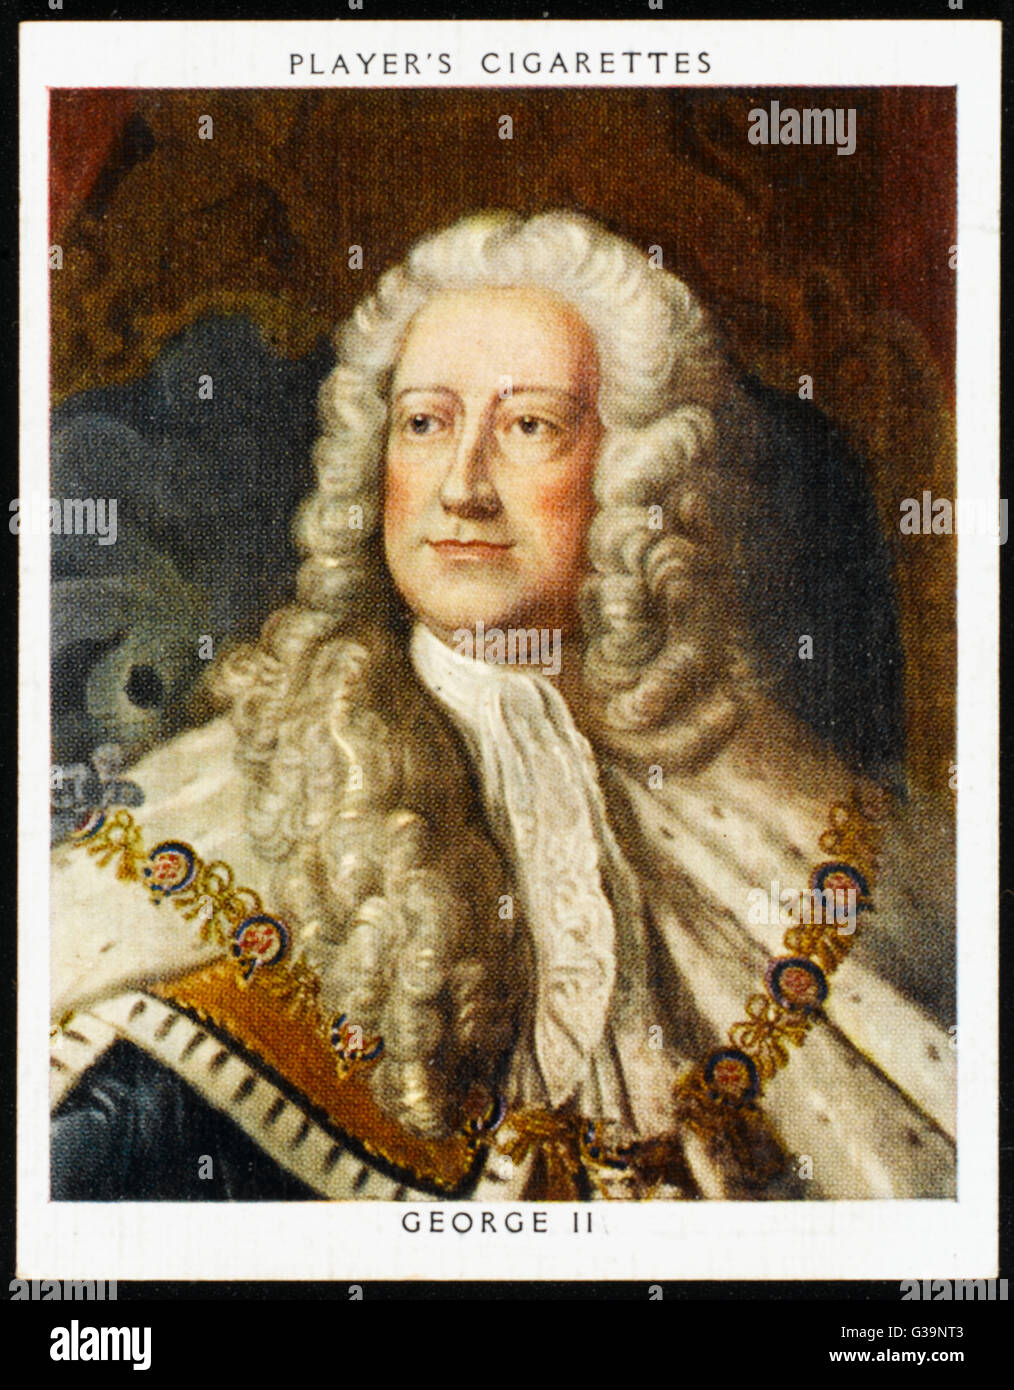 Jorge II, REY DE INGLATERRA reinó 1727 - 1760 Fecha: 1683 - 1760 Foto de stock